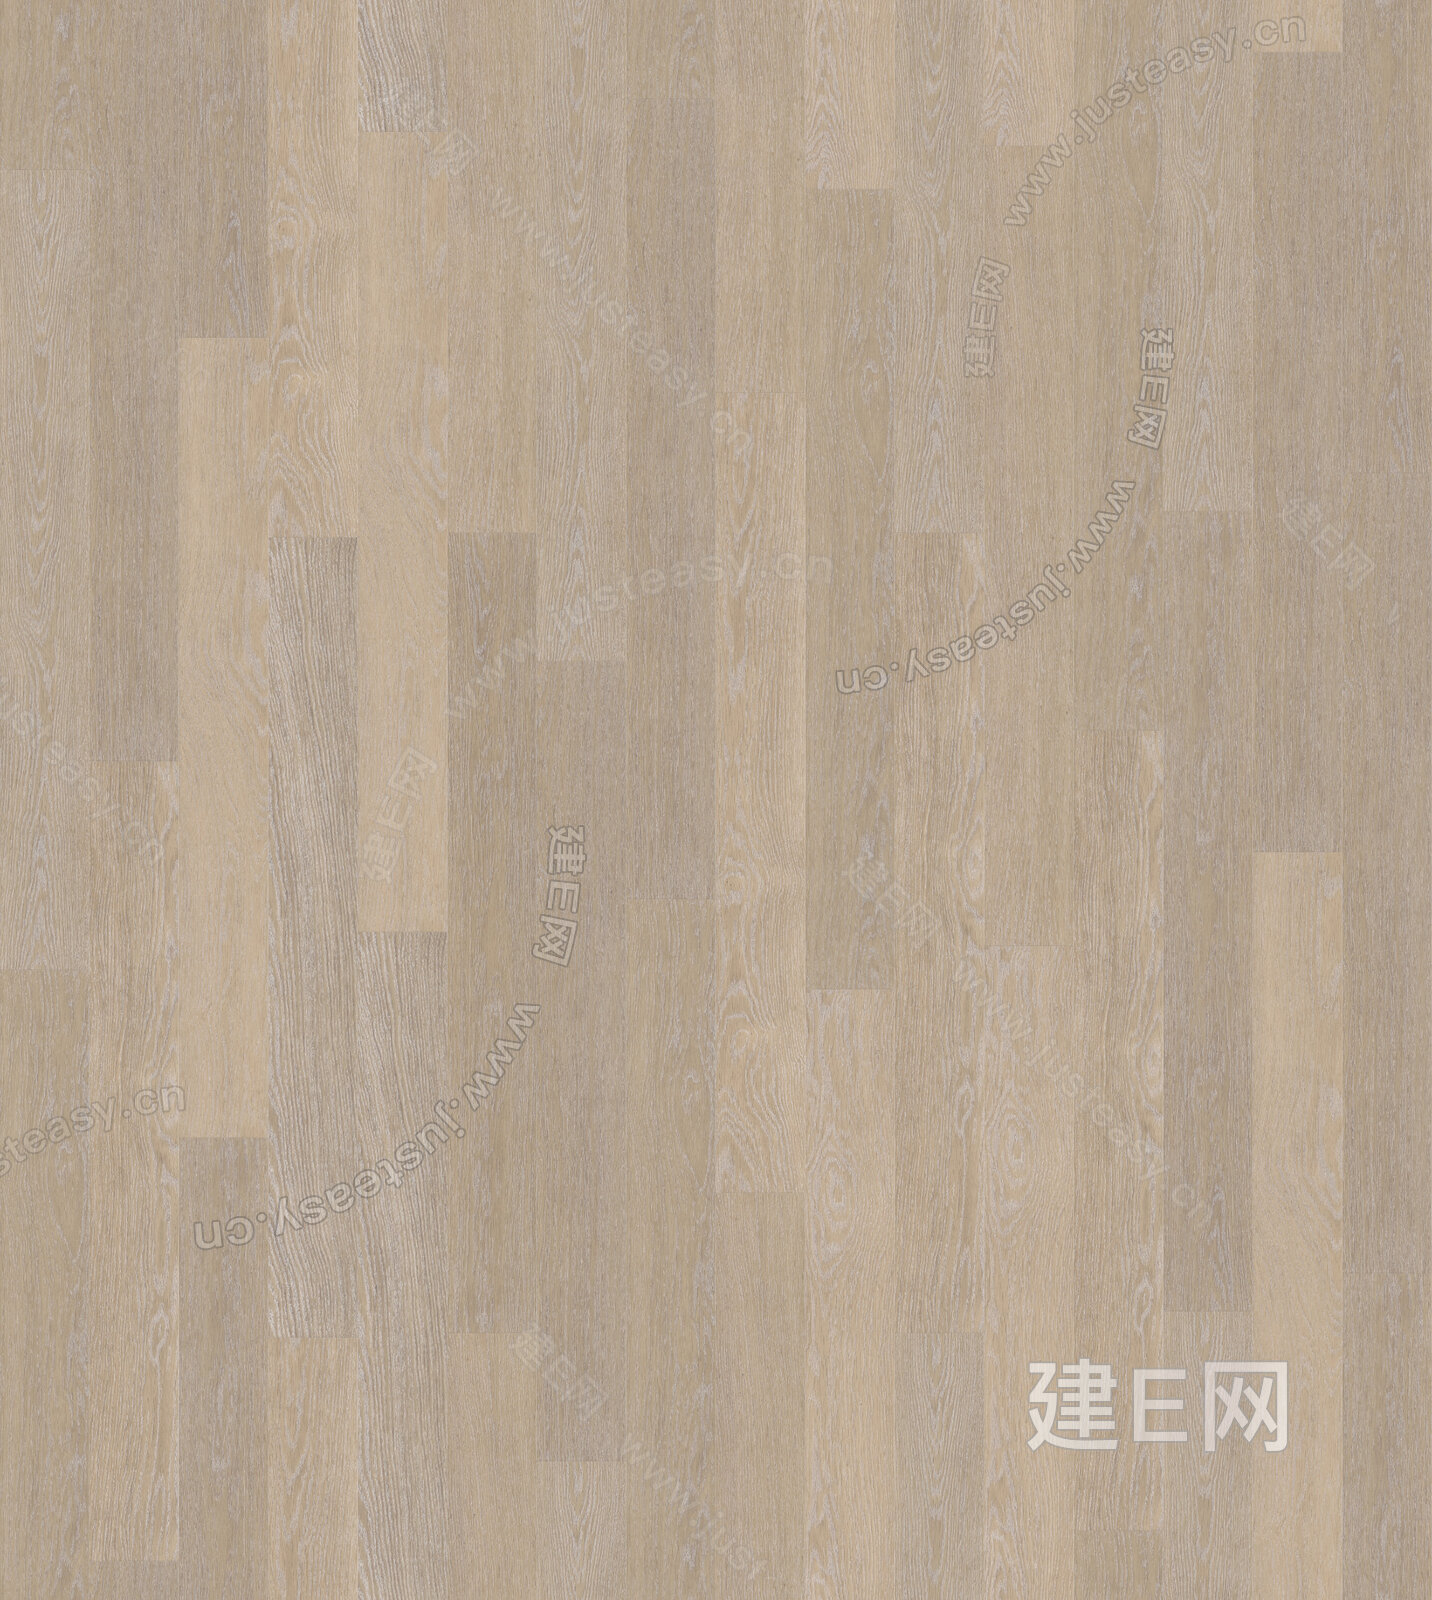 原木色木地板贴图高清贴图